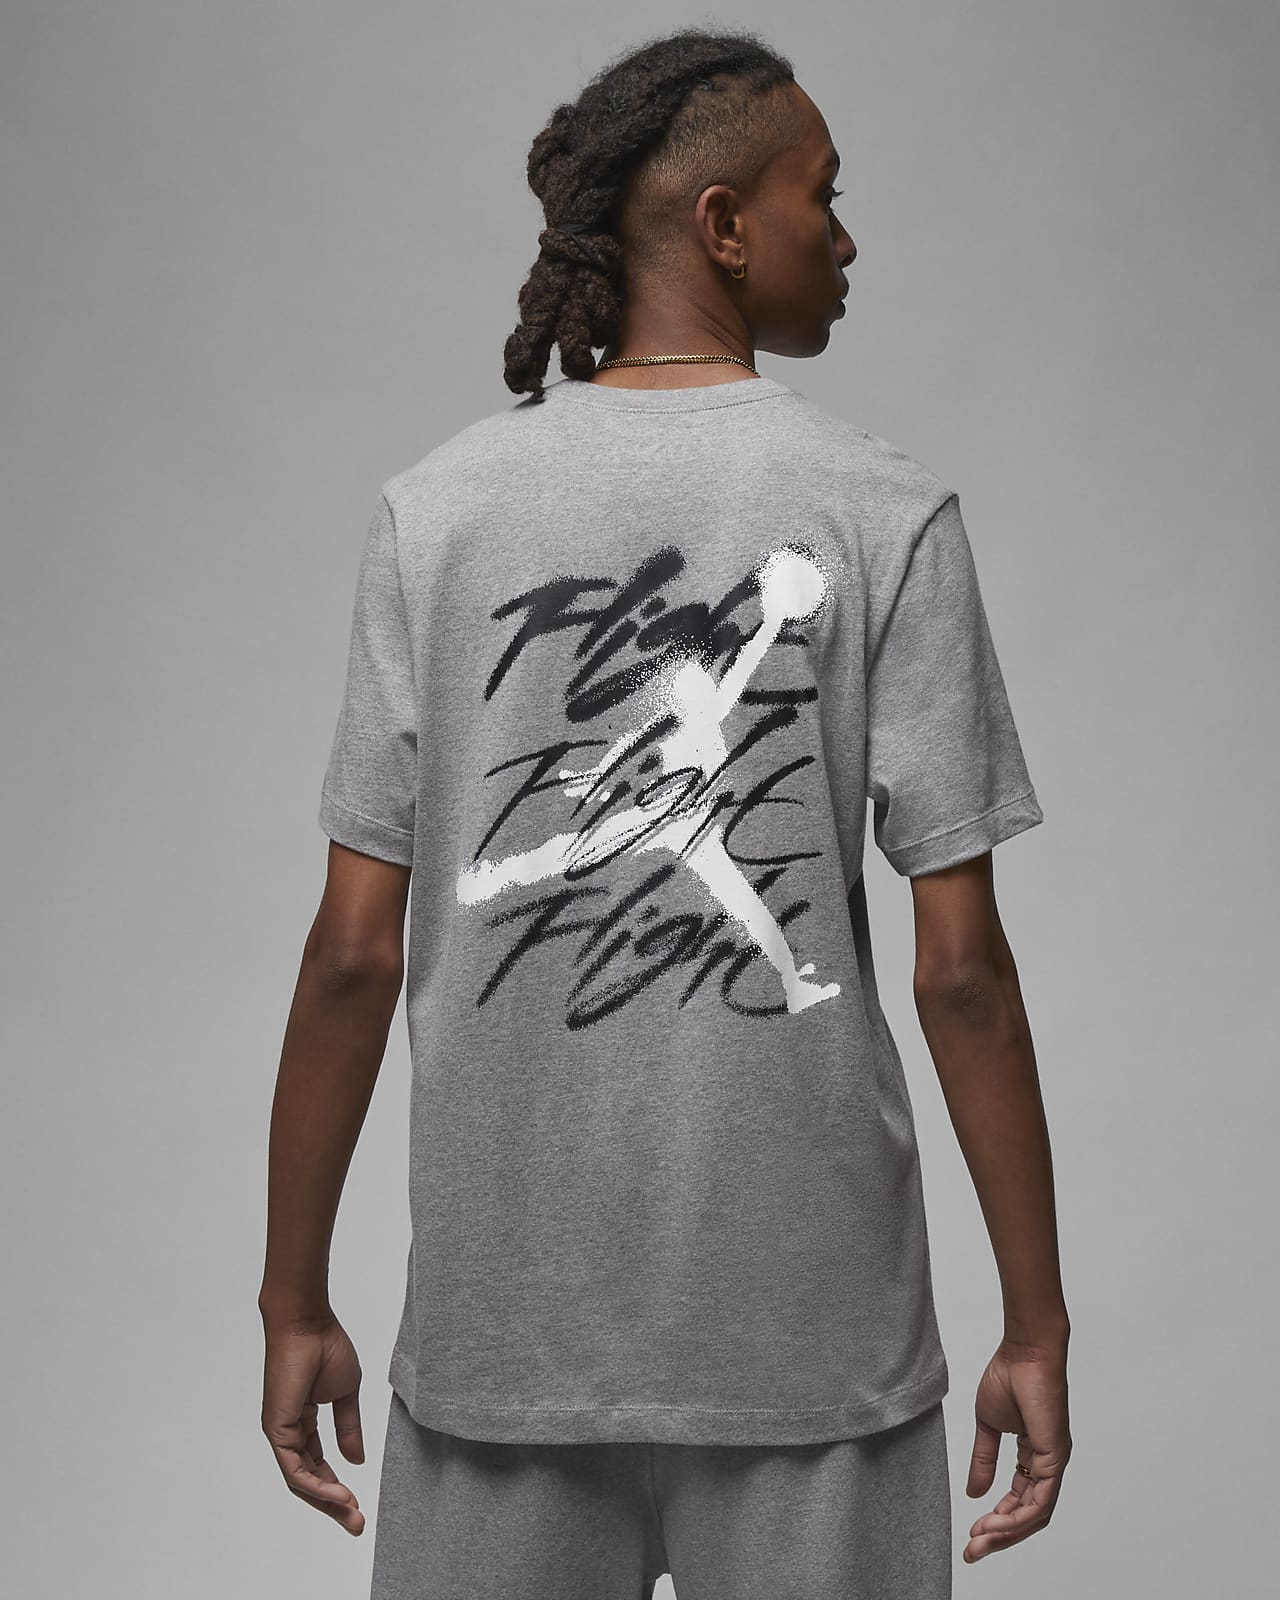 Farvel greb tæt Jordan-T-shirt med grafik til mænd. Nike DK